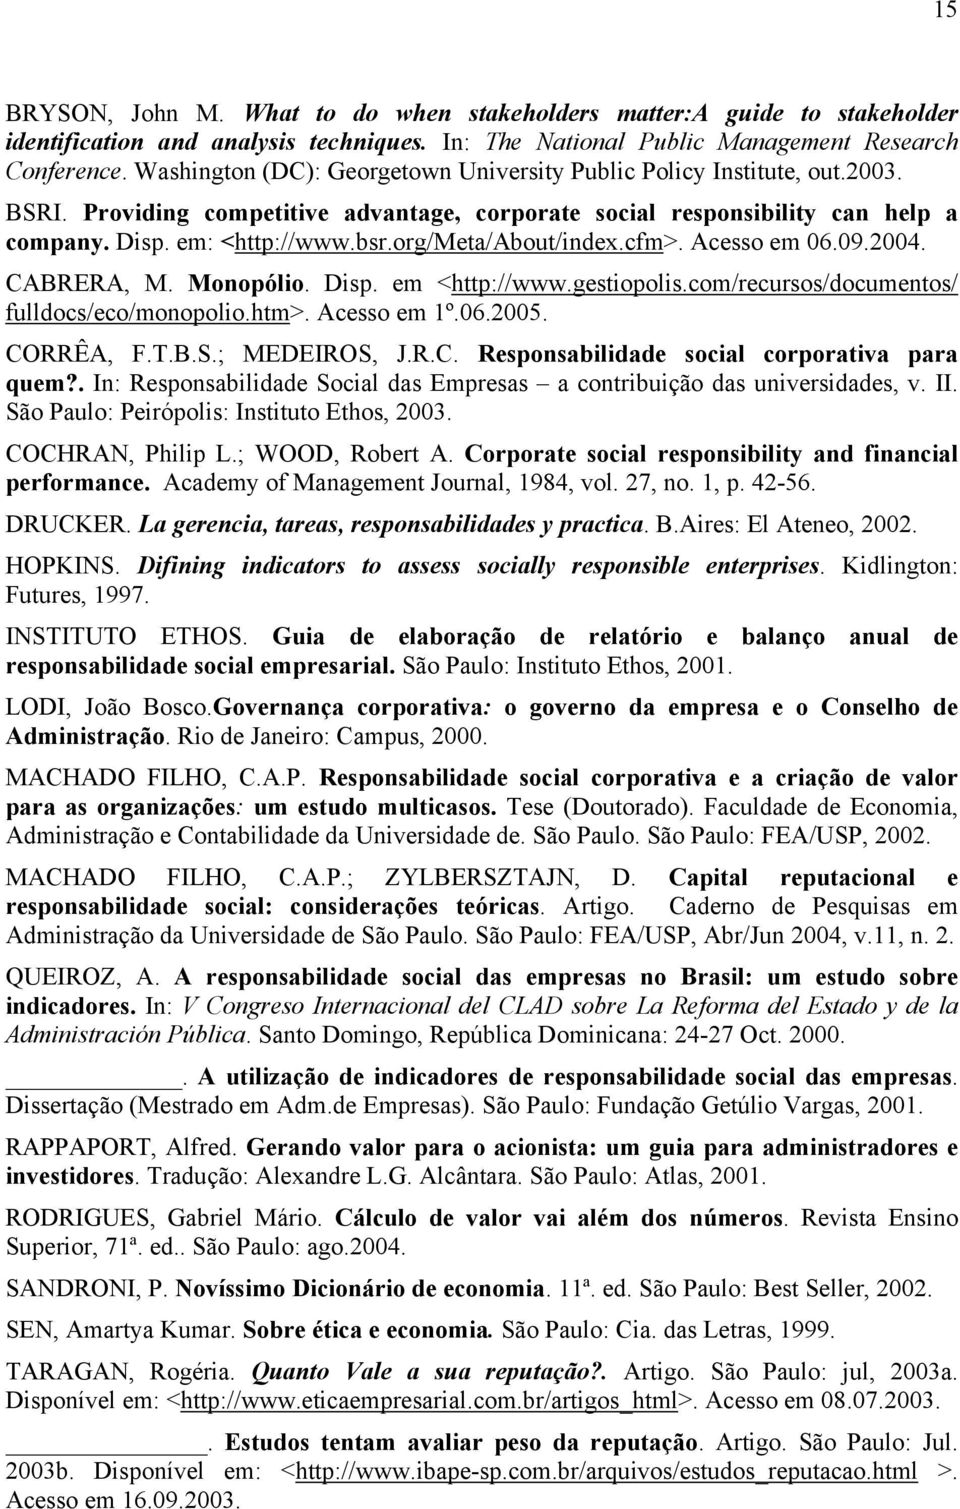 org/meta/about/index.cfm>. Acesso em 06.09.2004. CABRERA, M. Monopólio. Disp. em <http://www.gestiopolis.com/recursos/documentos/ fulldocs/eco/monopolio.htm>. Acesso em 1º.06.2005. CORRÊA, F.T.B.S.